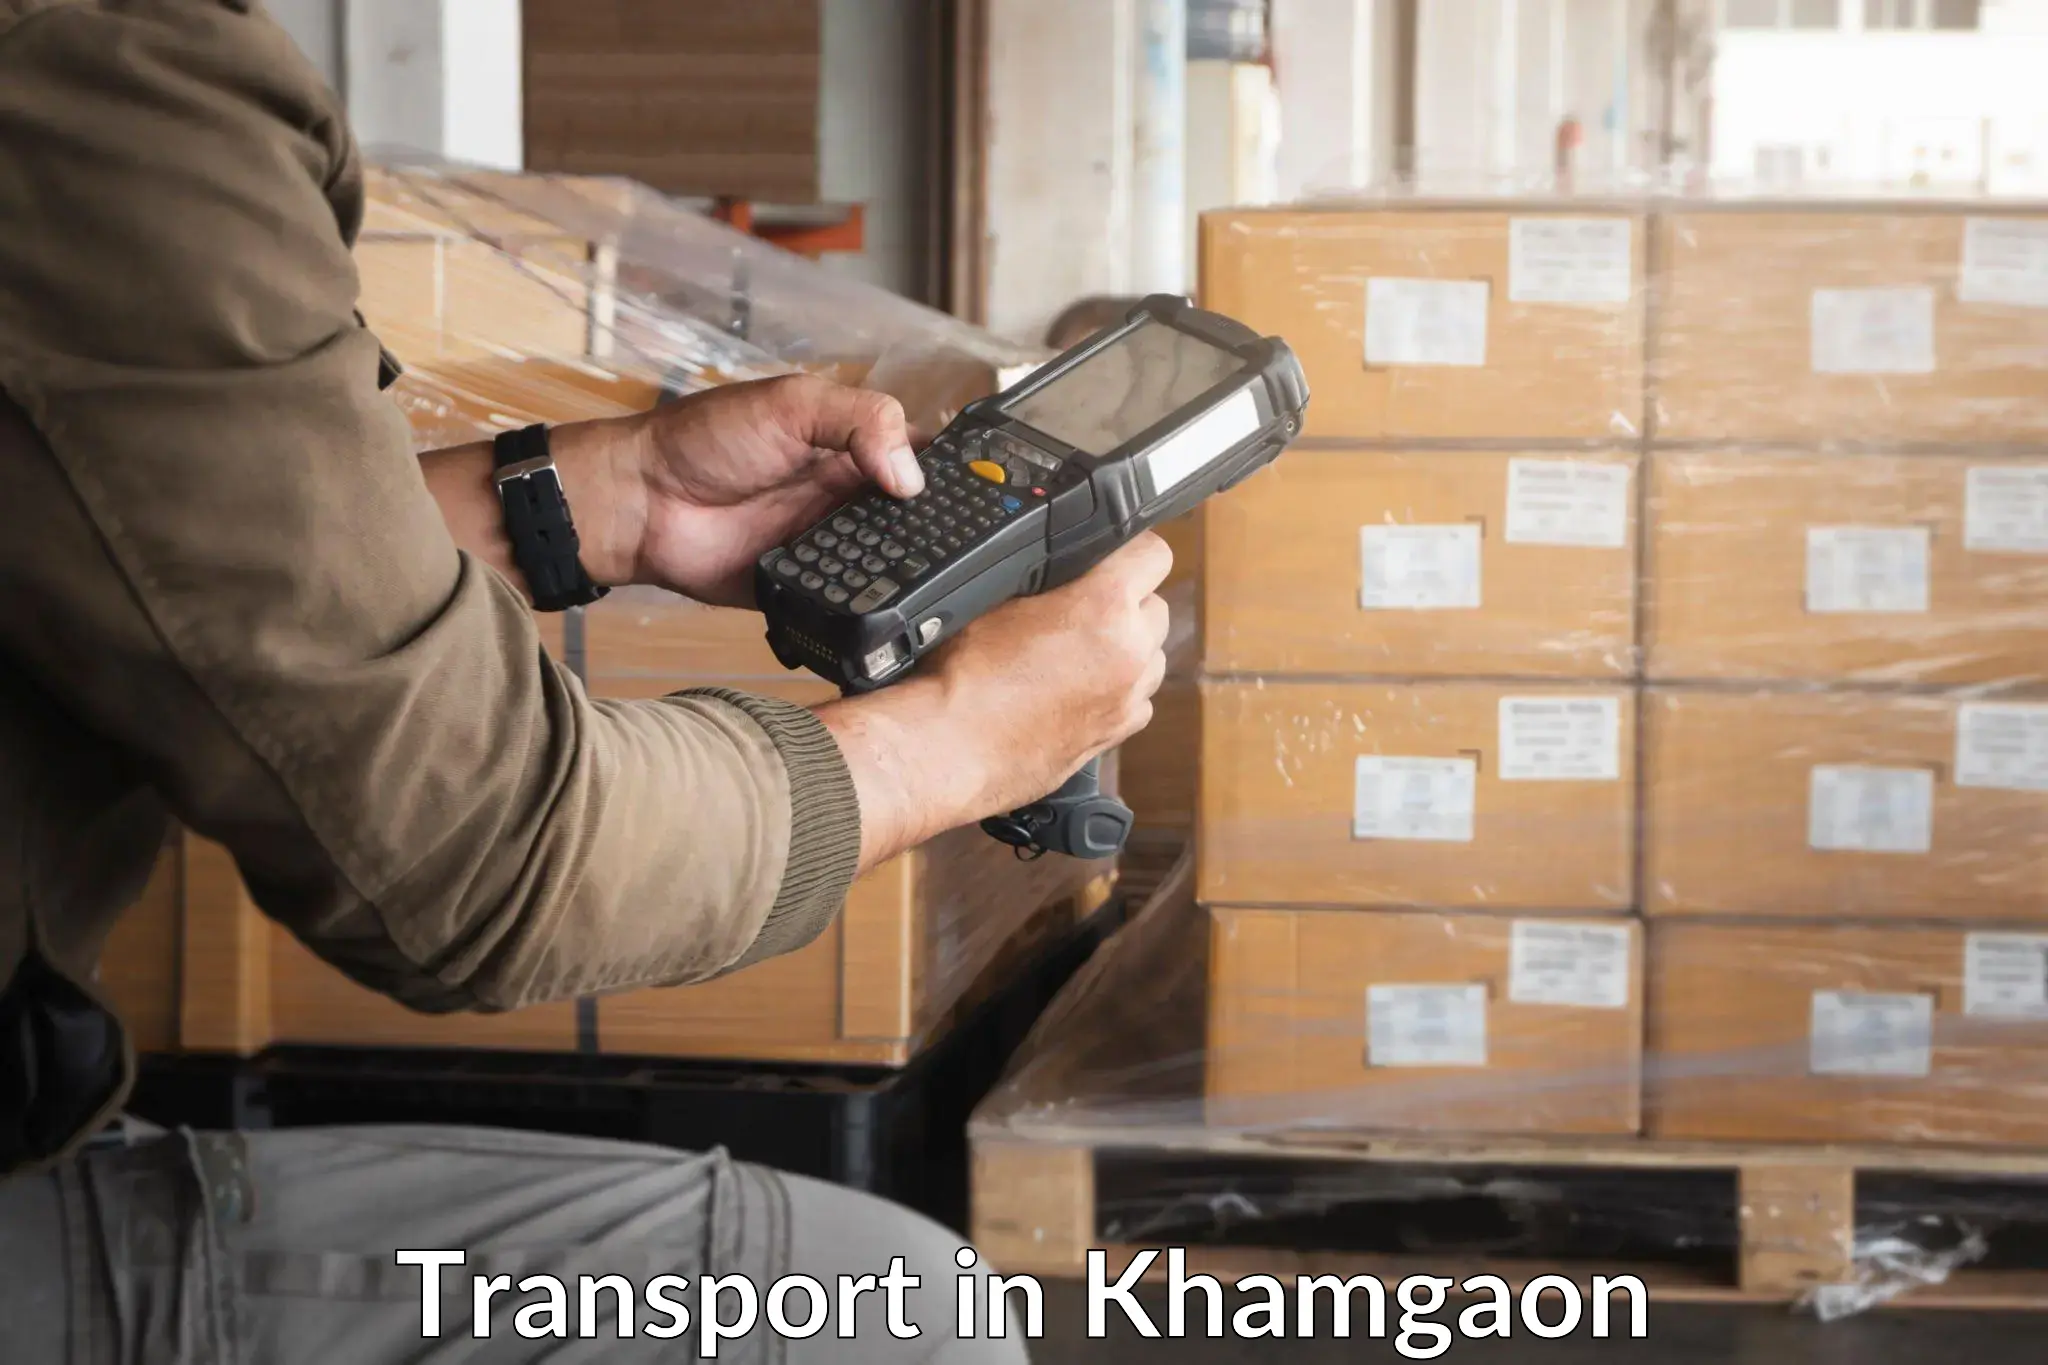 Online transport in Khamgaon